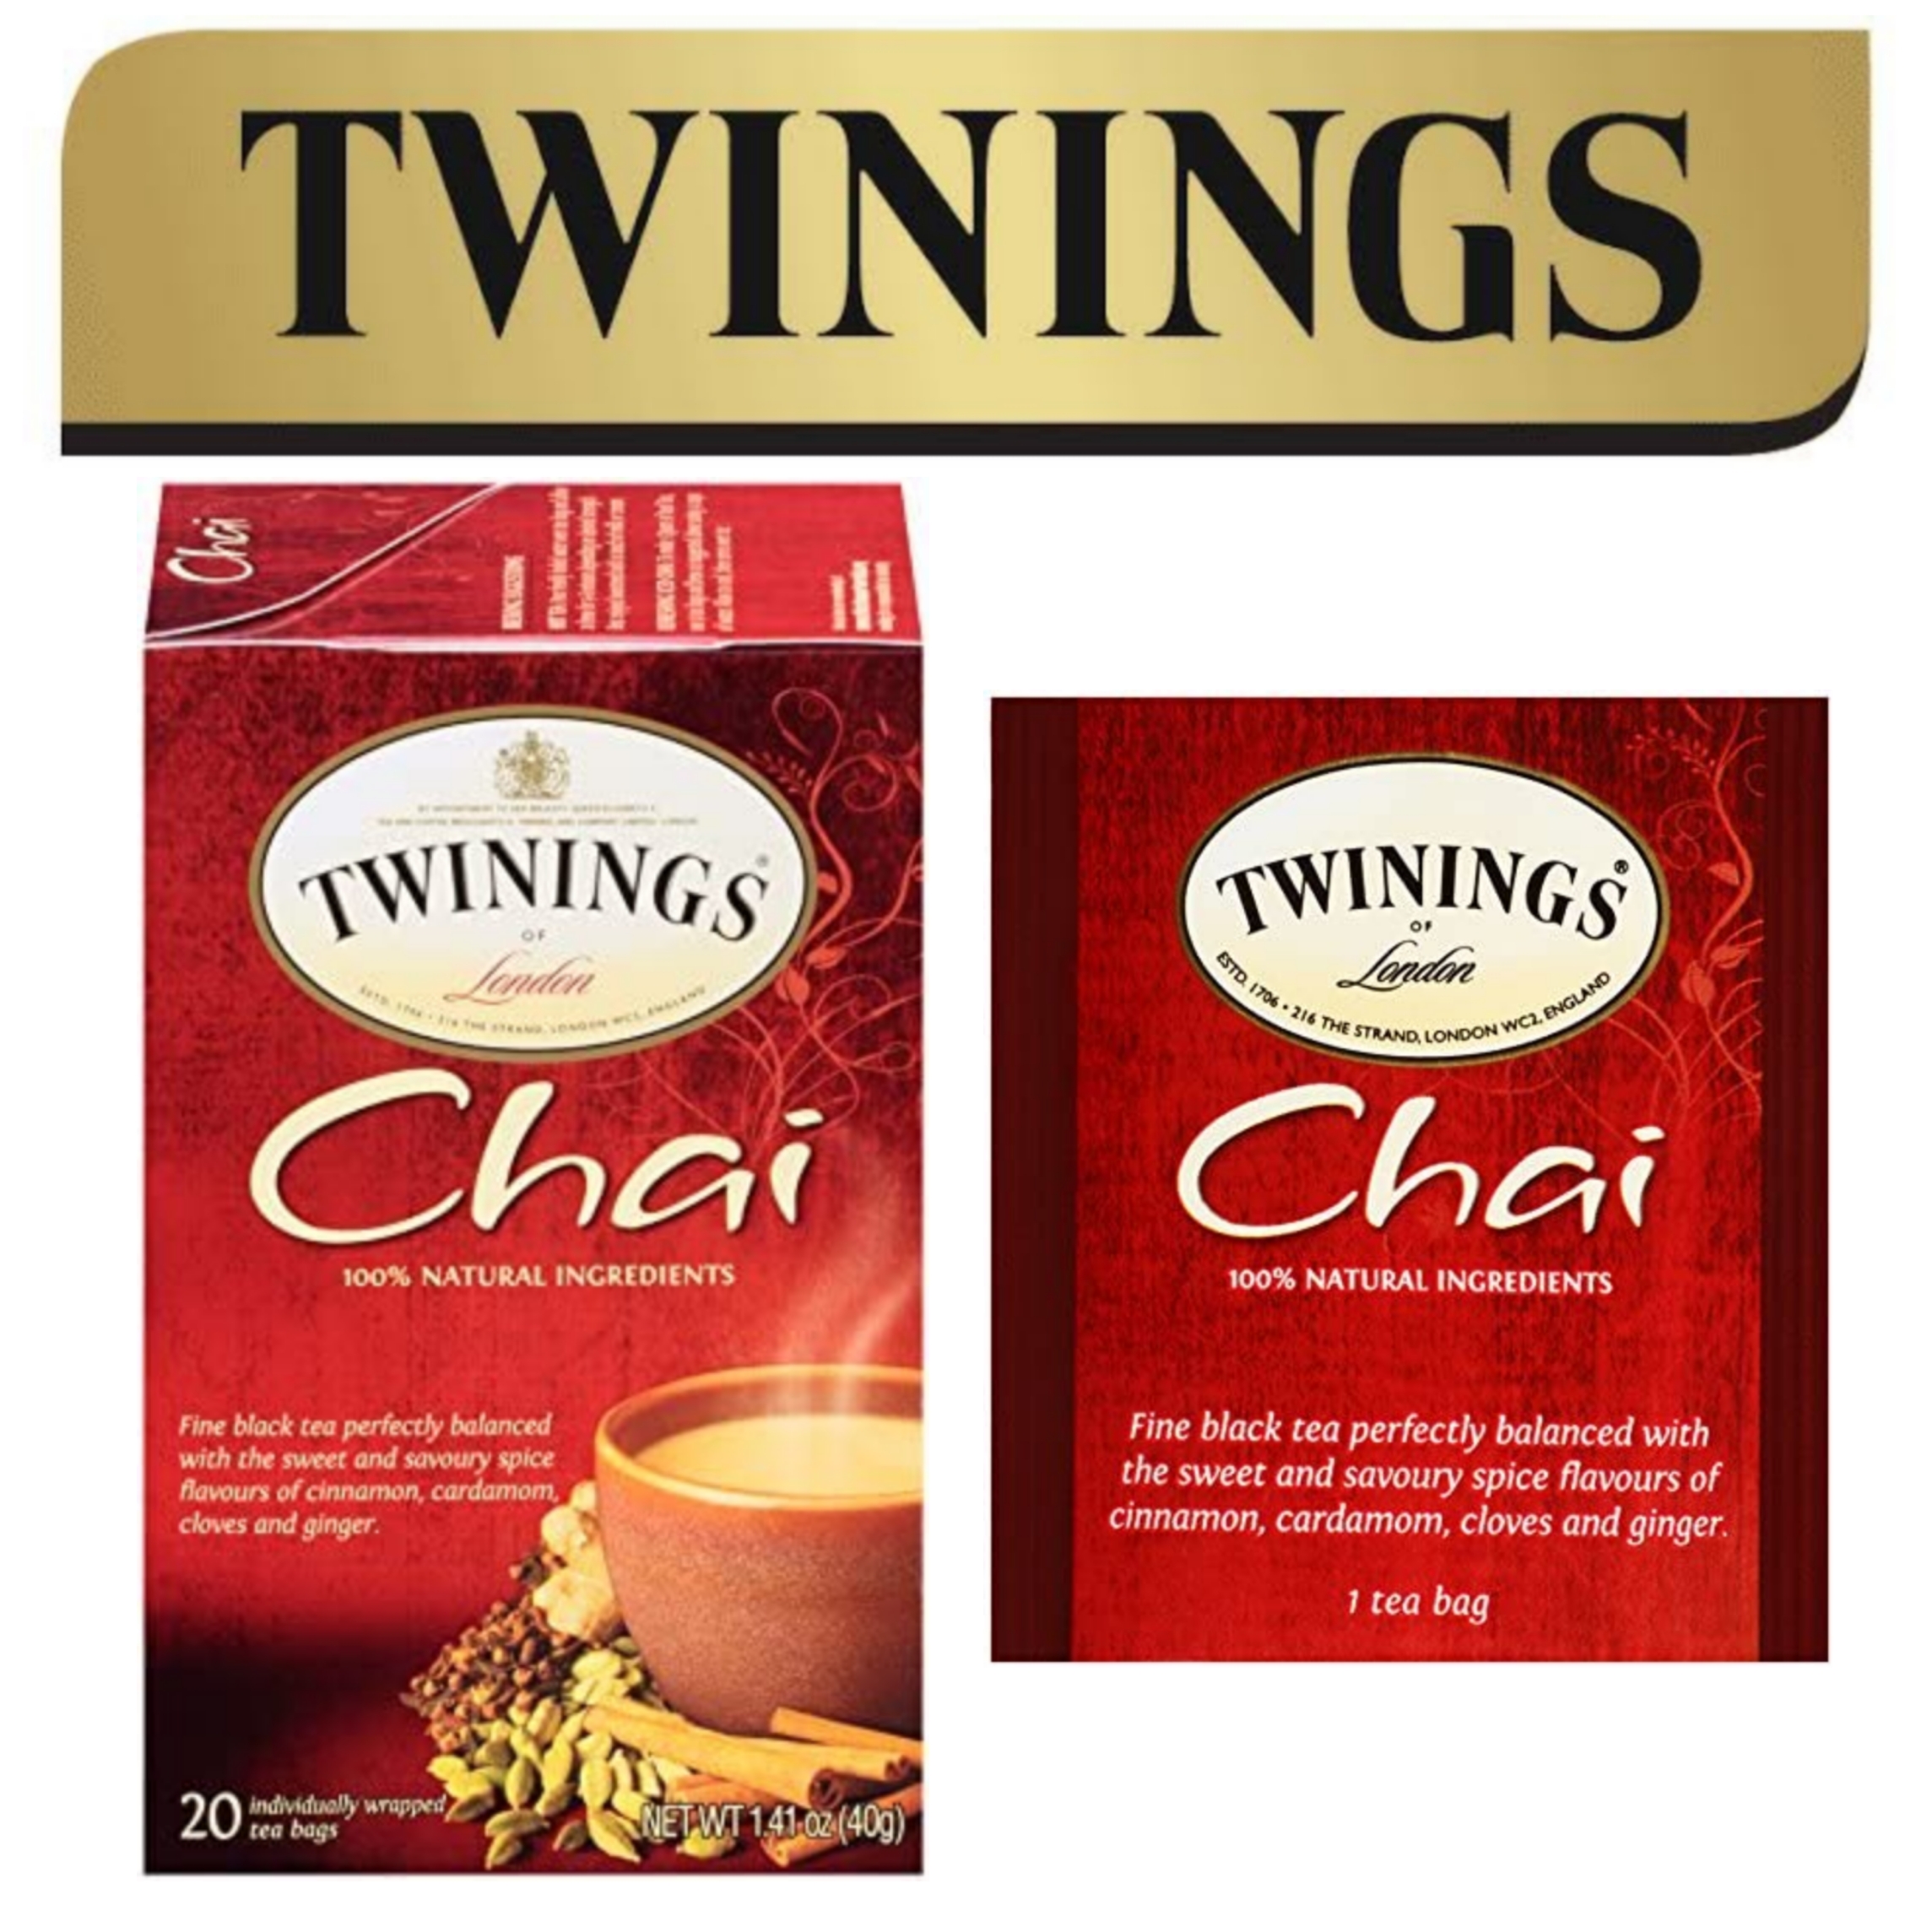 ⭐ Twinings ⭐Chai Tea🍵 ชาทไวนิงส์ ชาอินเดีย แบบกล่อง 25 ซอง ชาอังกฤษนำเข้าจากต่างประเทศ